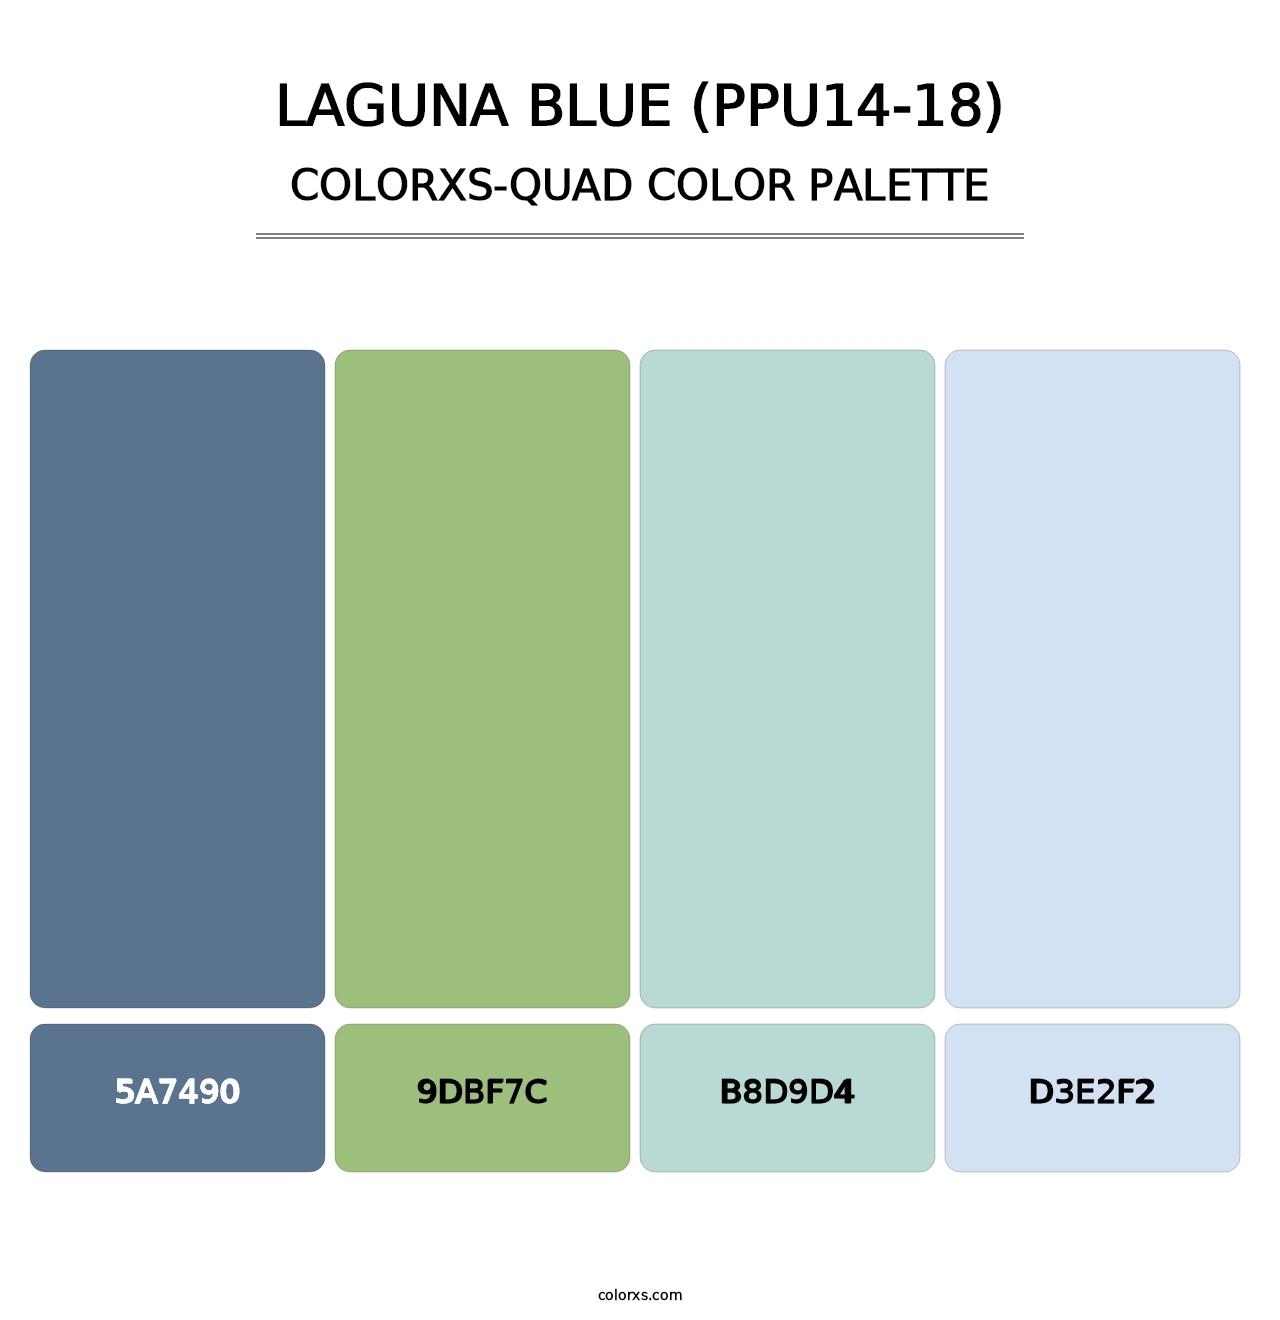 Laguna Blue (PPU14-18) - Colorxs Quad Palette